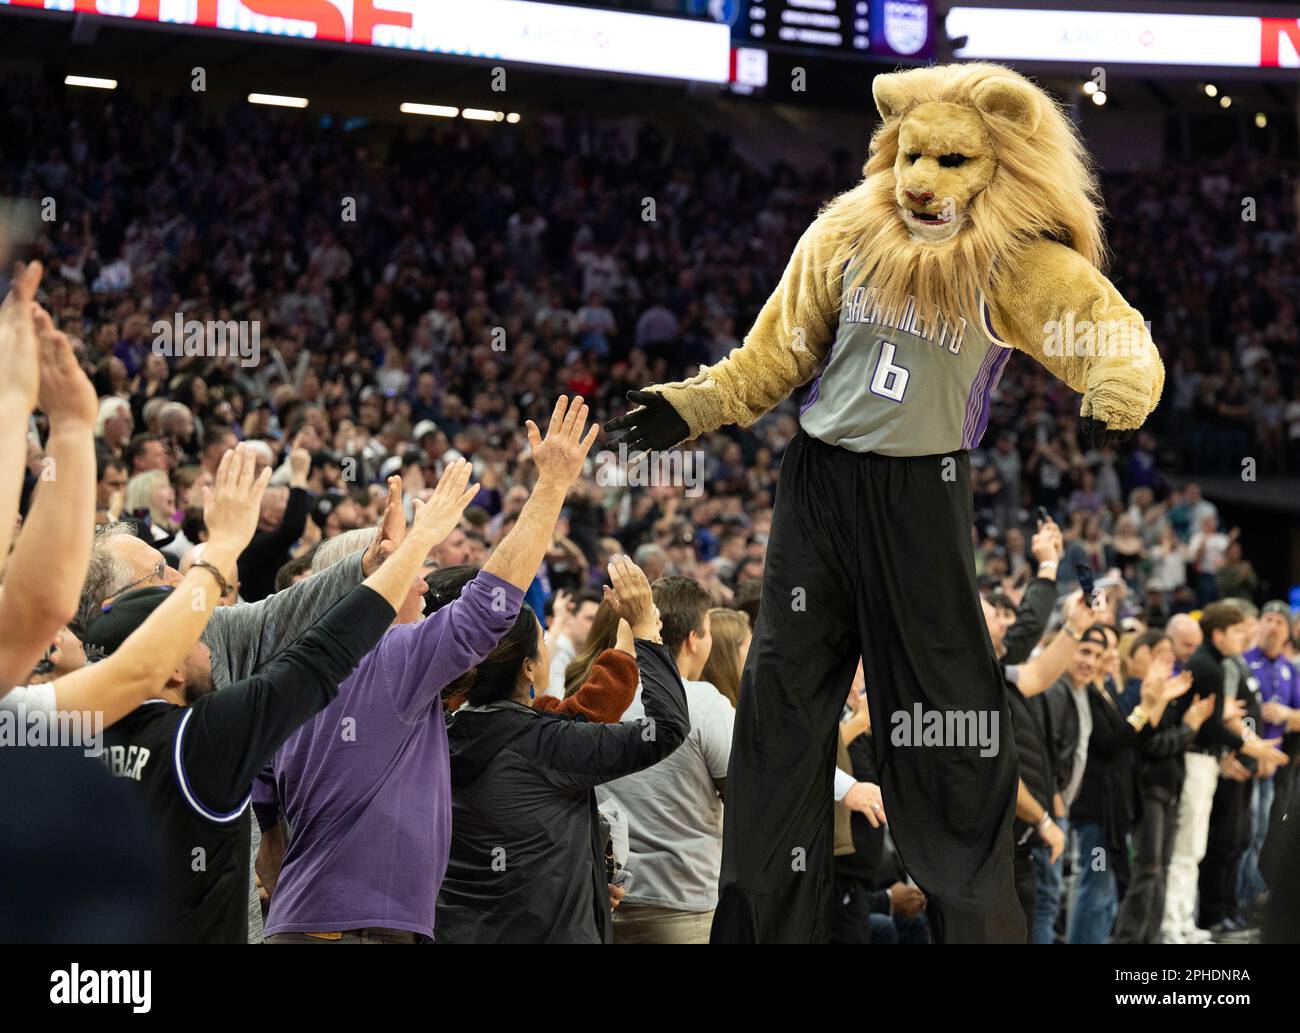 Who is the Sacramento Kings' Mascot Slamson the Lion?